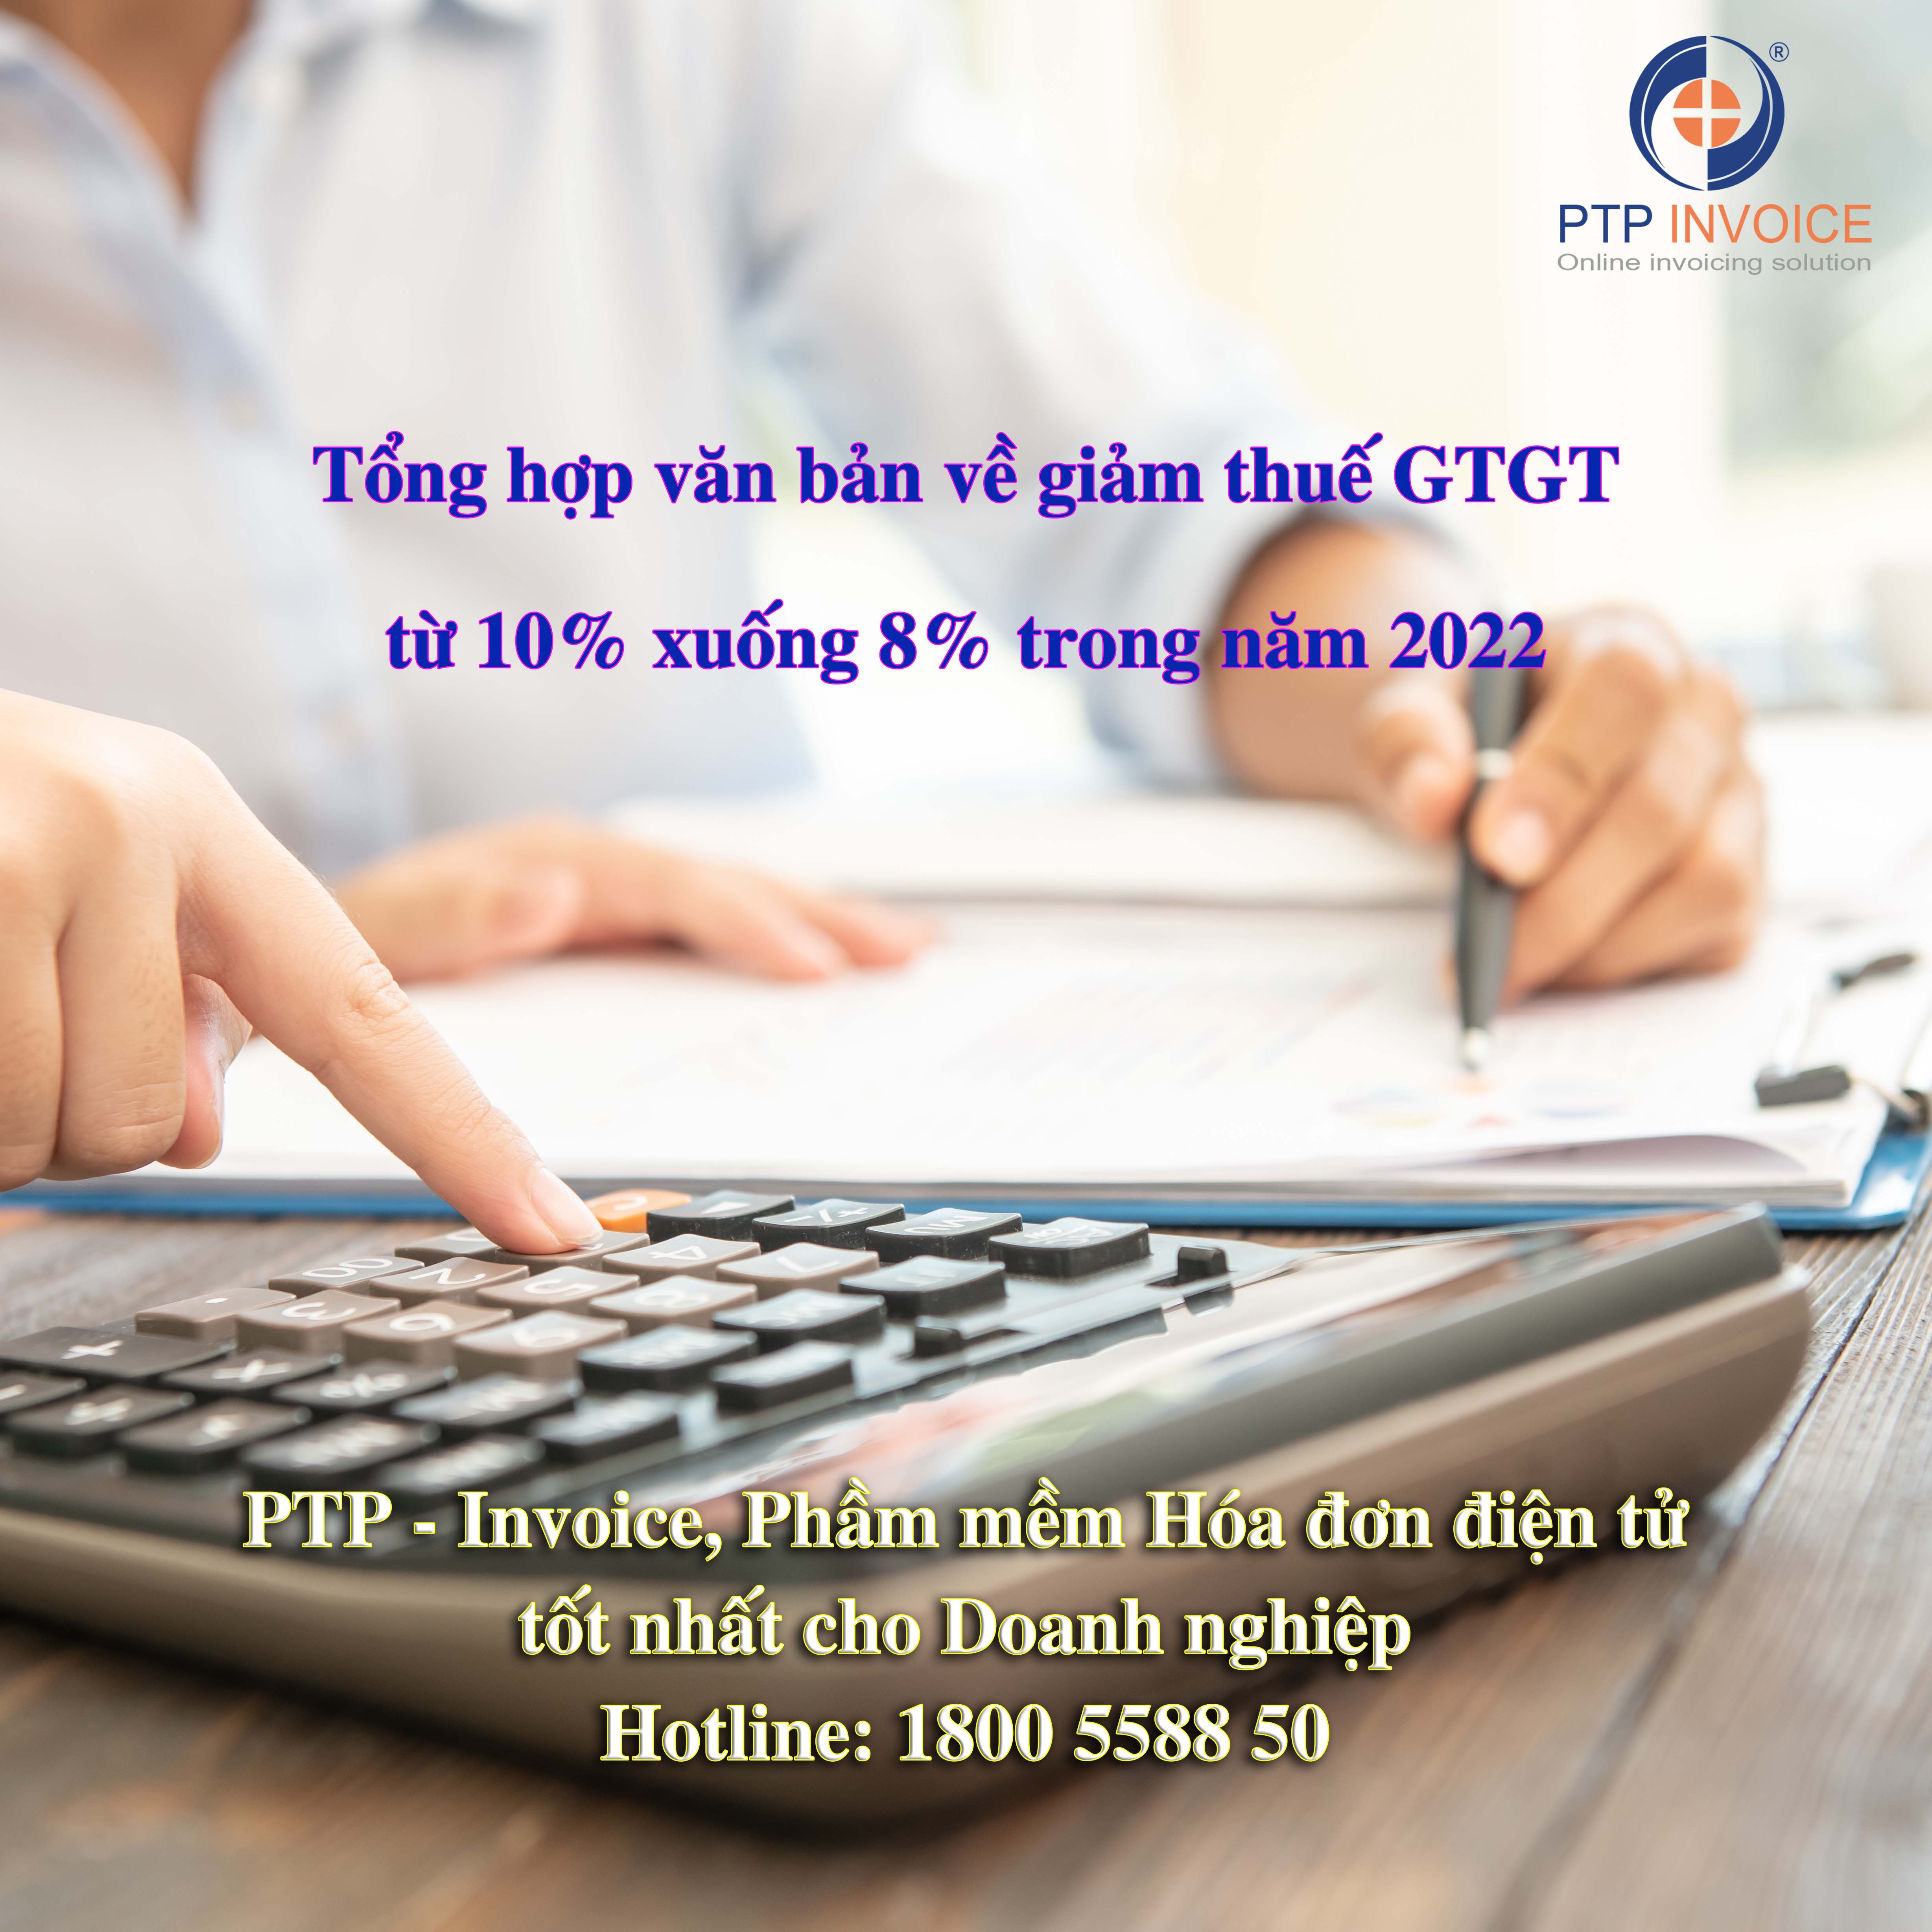 Tổng hợp văn bản về giảm thuế GTGT từ 10% xuống 8% trong năm 2022